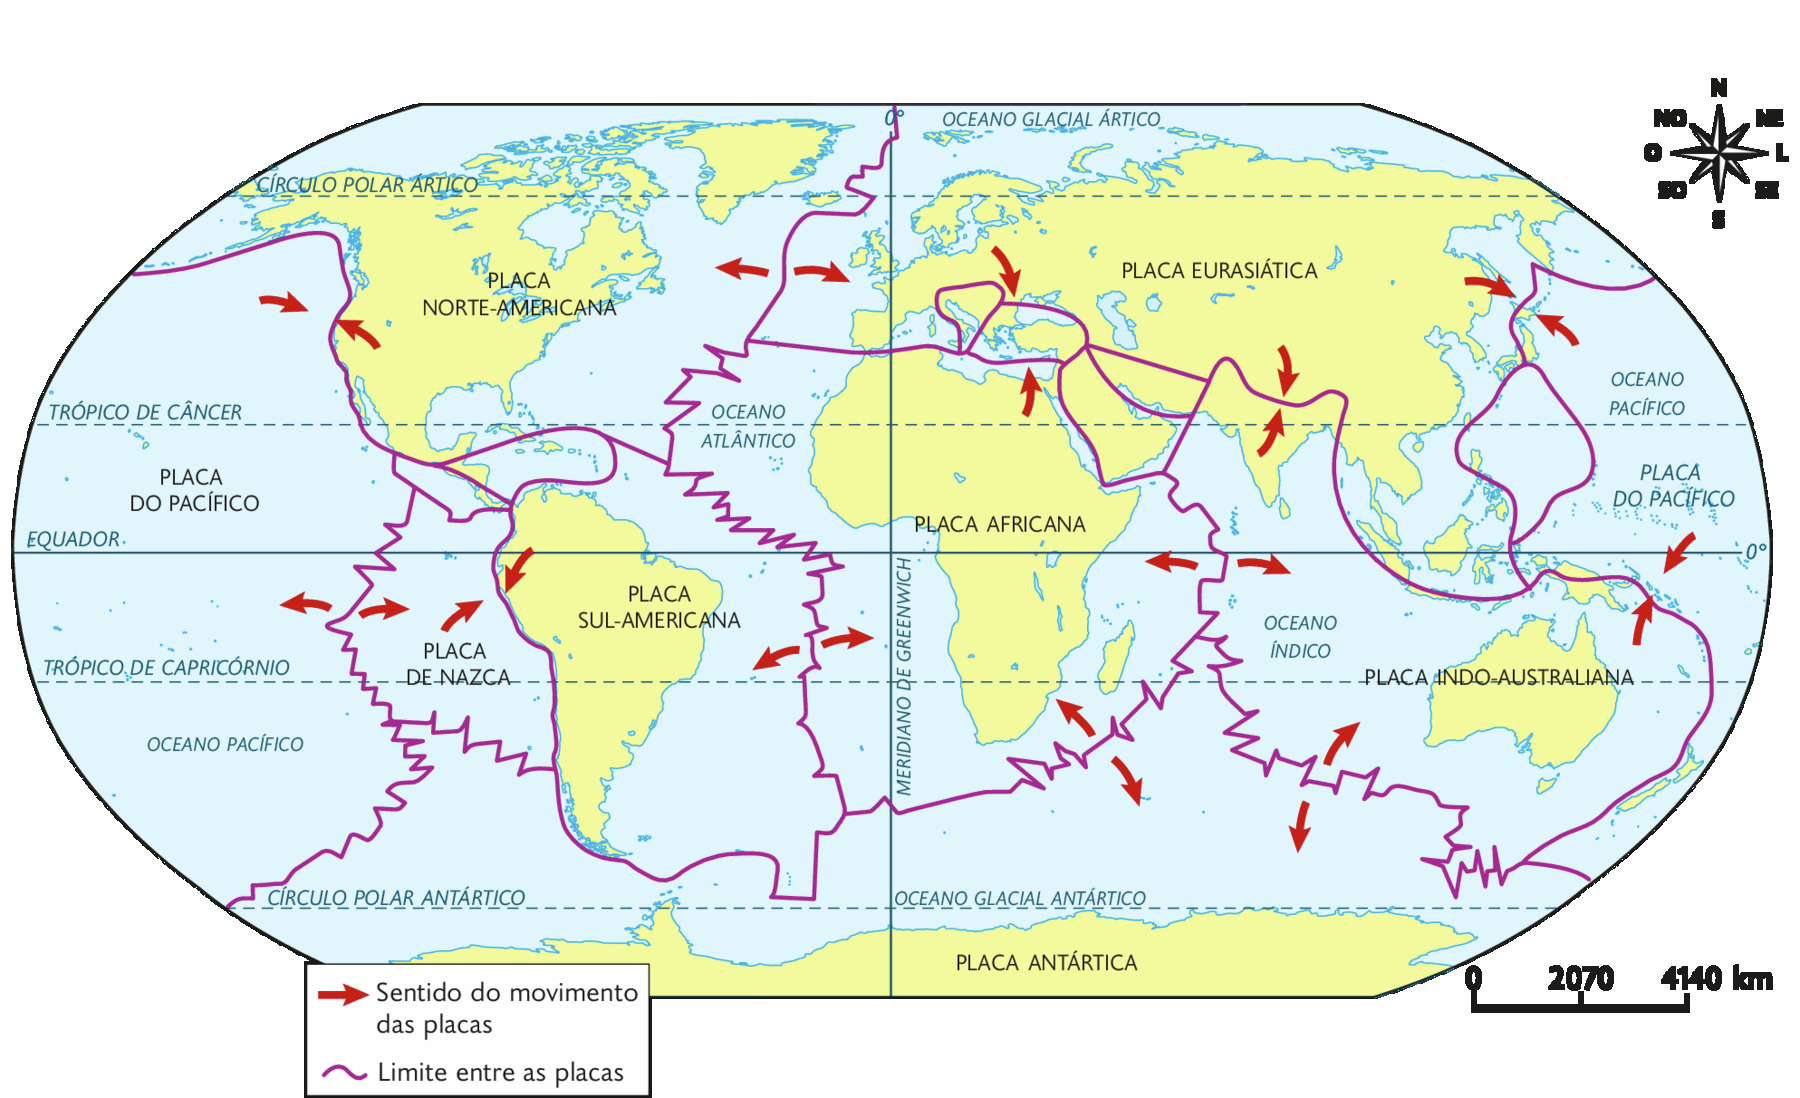 Mapa-múndi. Principais placas tectônicas (2018). 
Placa do Pacífico, no oeste; Placa Norte-Americana na América do Norte; Placa de Nazca no oeste da América do Sul; Placa Sul-Americana na América do Sul; Placa Africada na região da África; Placa Eurasiática ocupando norte da Europa e a Ásia; Placa Indo-Australiana na região da Oceania; e a Placa Antártica na região da Antártida. Há setas indicando o movimento entre as placas que se empurram e/ou se afastam. No canto superior direito, a rosa dos ventos e na parte inferior, a escala: 2070 quilômetros por centímetro.